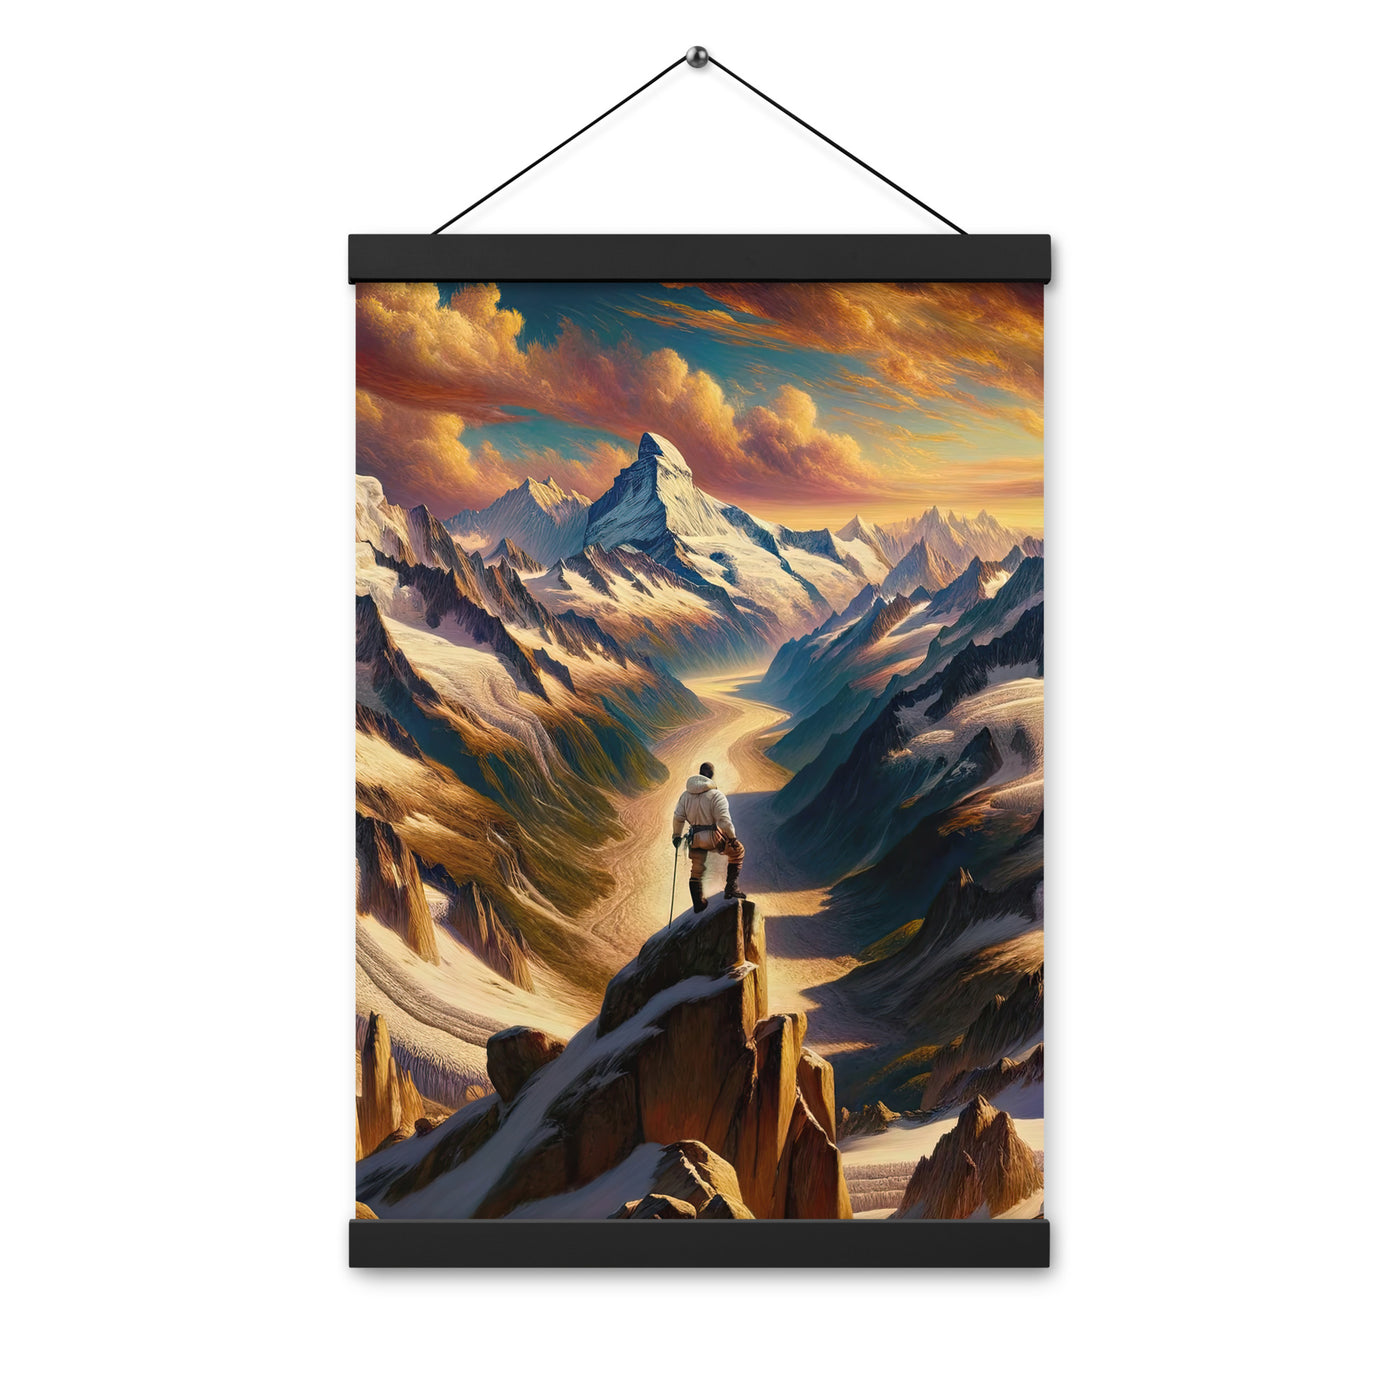 Ölgemälde eines Wanderers auf einem Hügel mit Panoramablick auf schneebedeckte Alpen und goldenen Himmel - Enhanced Matte Paper Poster wandern xxx yyy zzz 30.5 x 45.7 cm